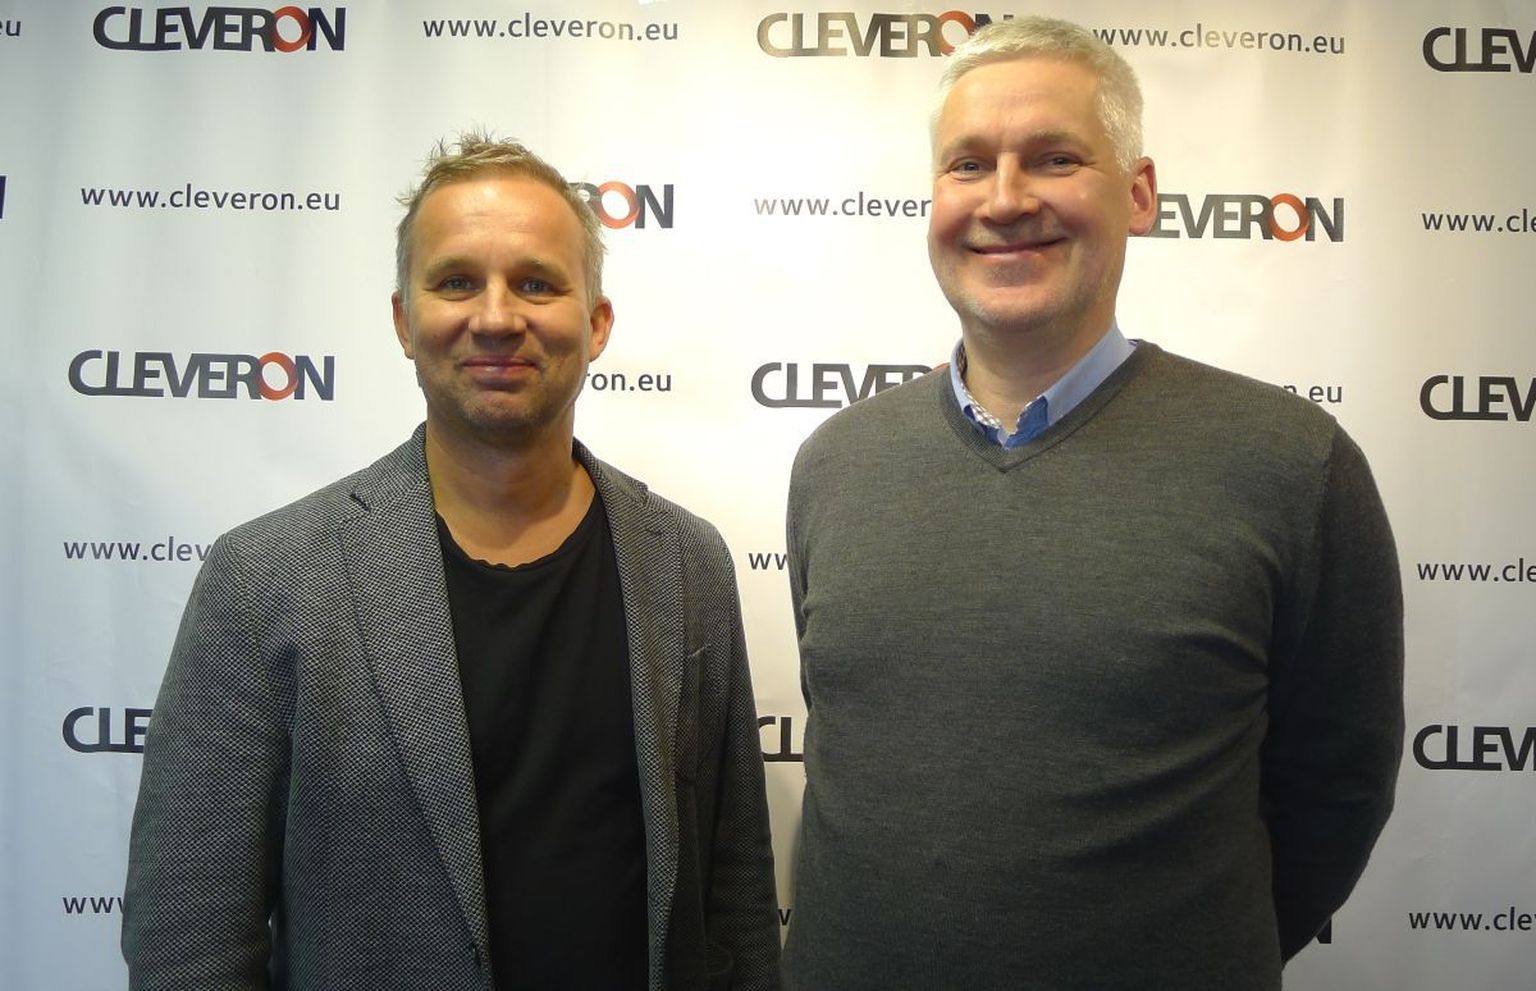 Cleveroni asutaja ja omanik Arno Kütt ning kauaaegse tippjuhikogemusega Andres Liinat hakkavad nüüdsest koos Cleveroni arendama.